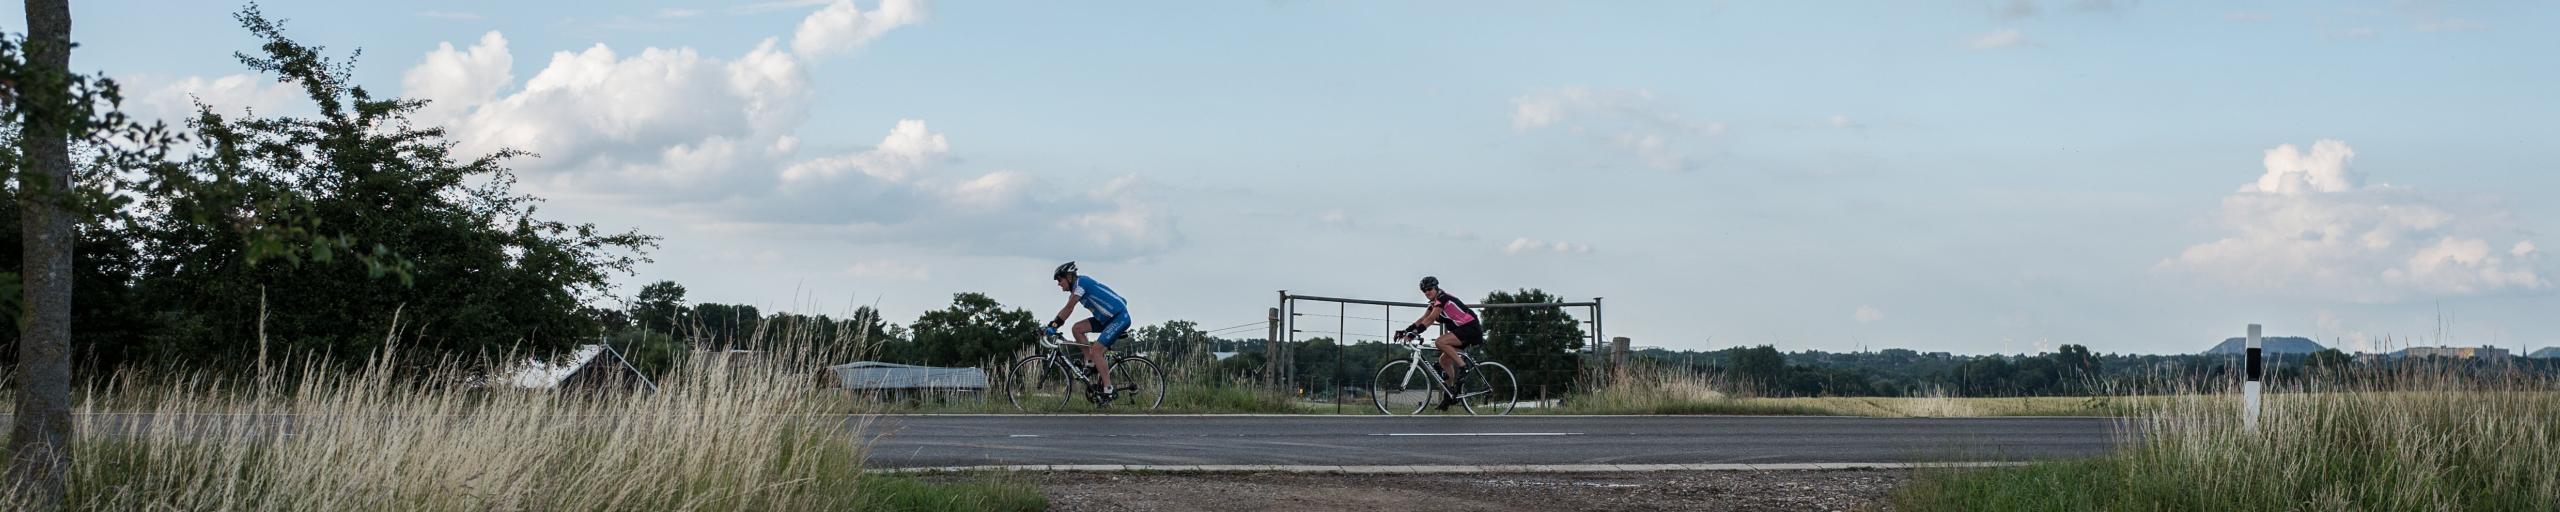 Fietsers fietsen op geasfalteerde weg door het landschap